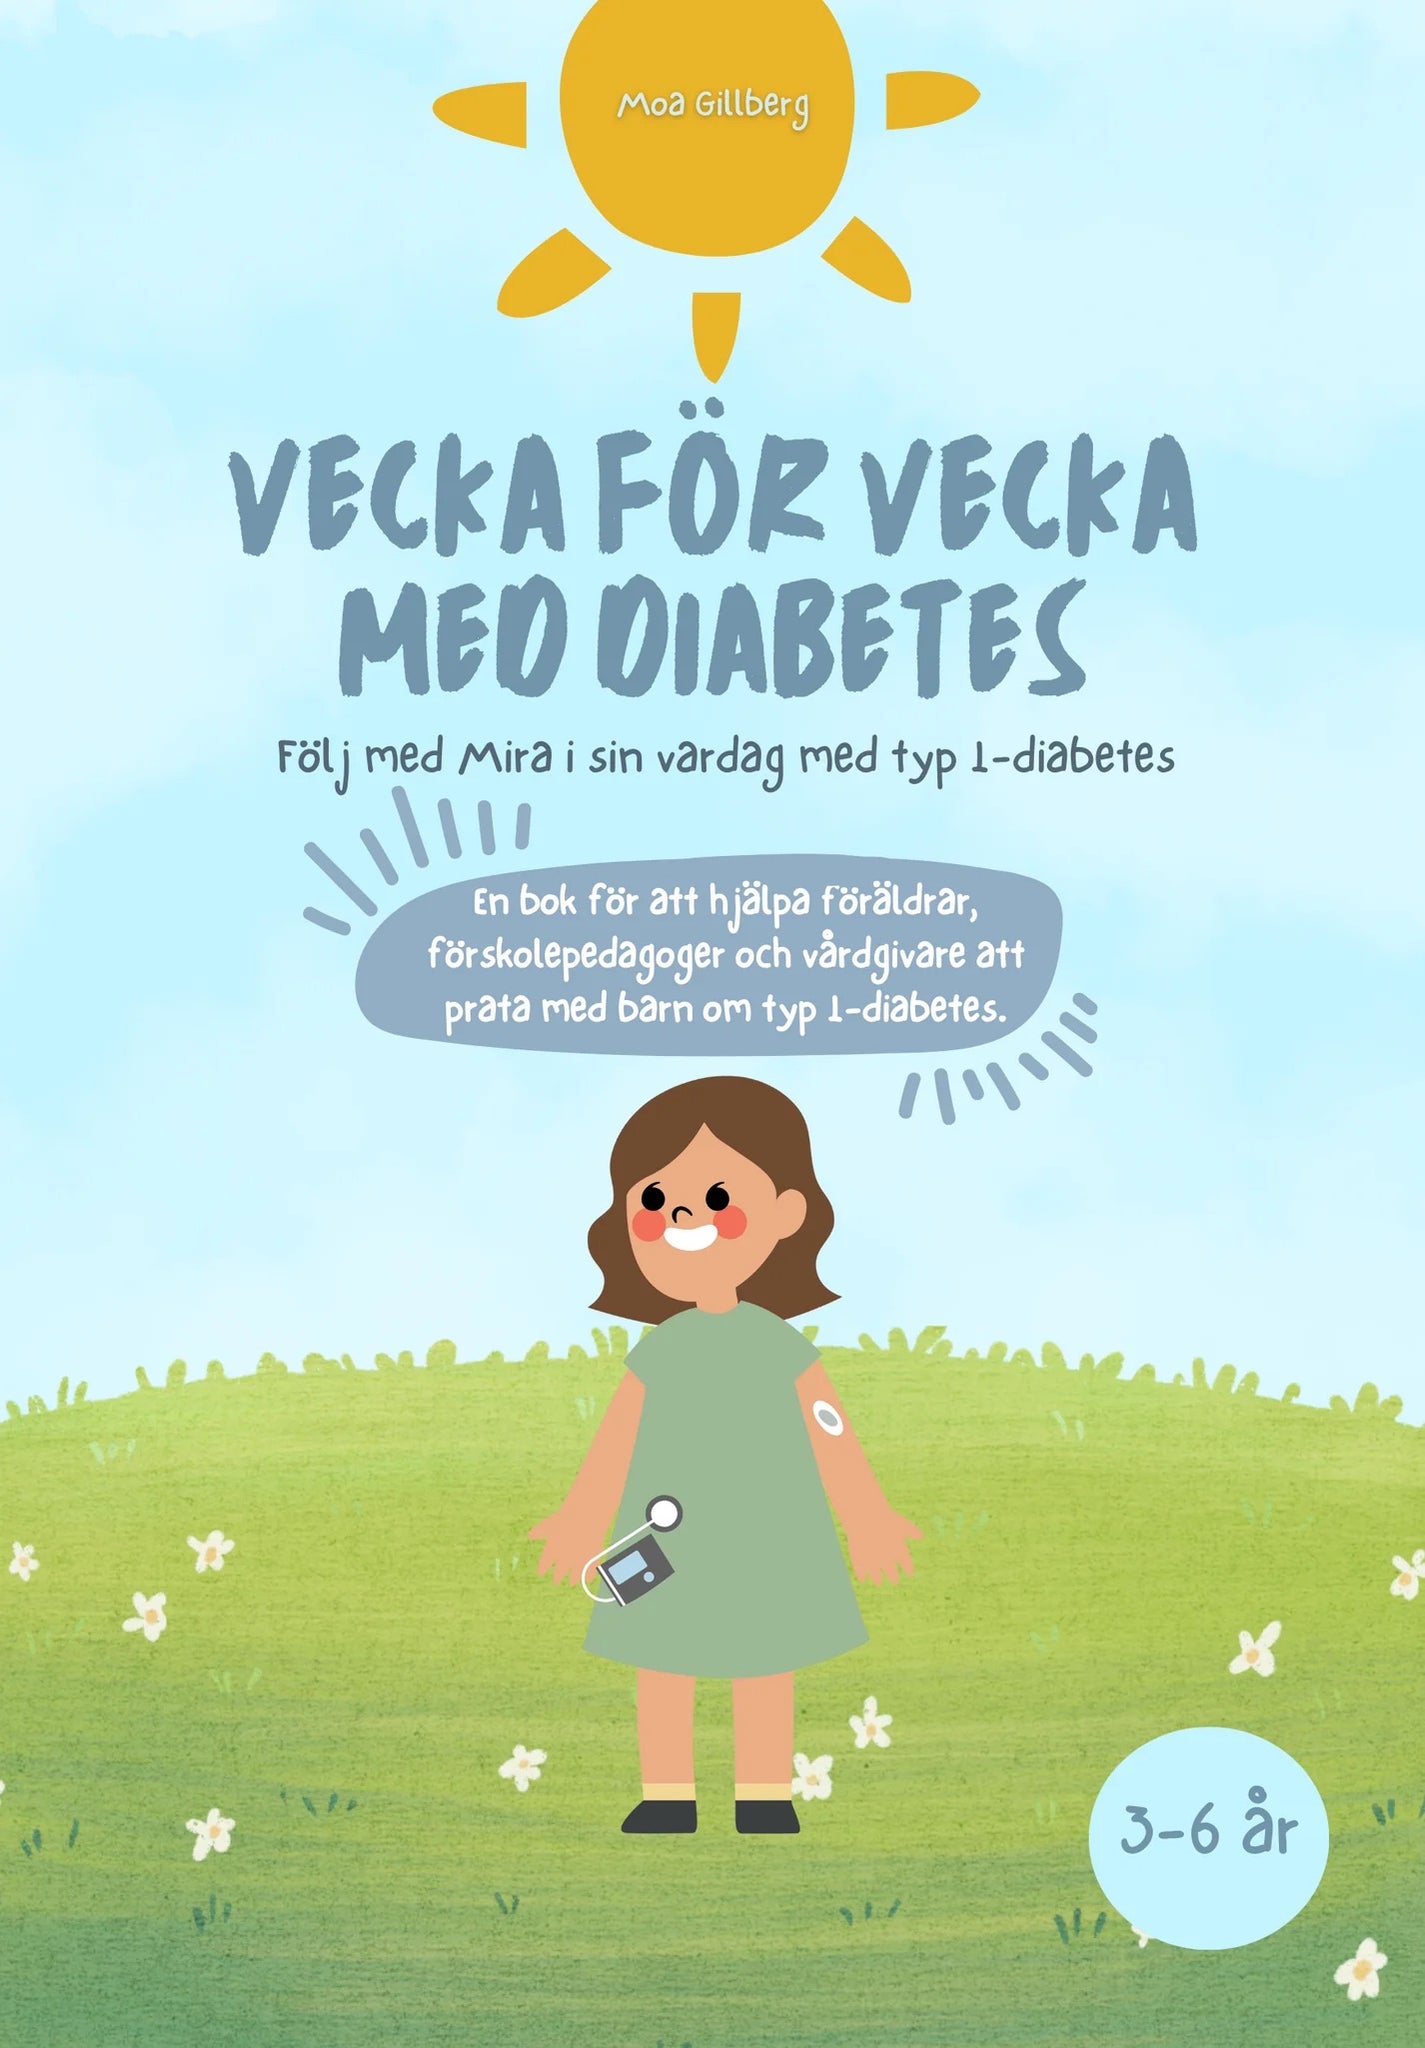 Vfvmeddiabetes x Diabetic Box